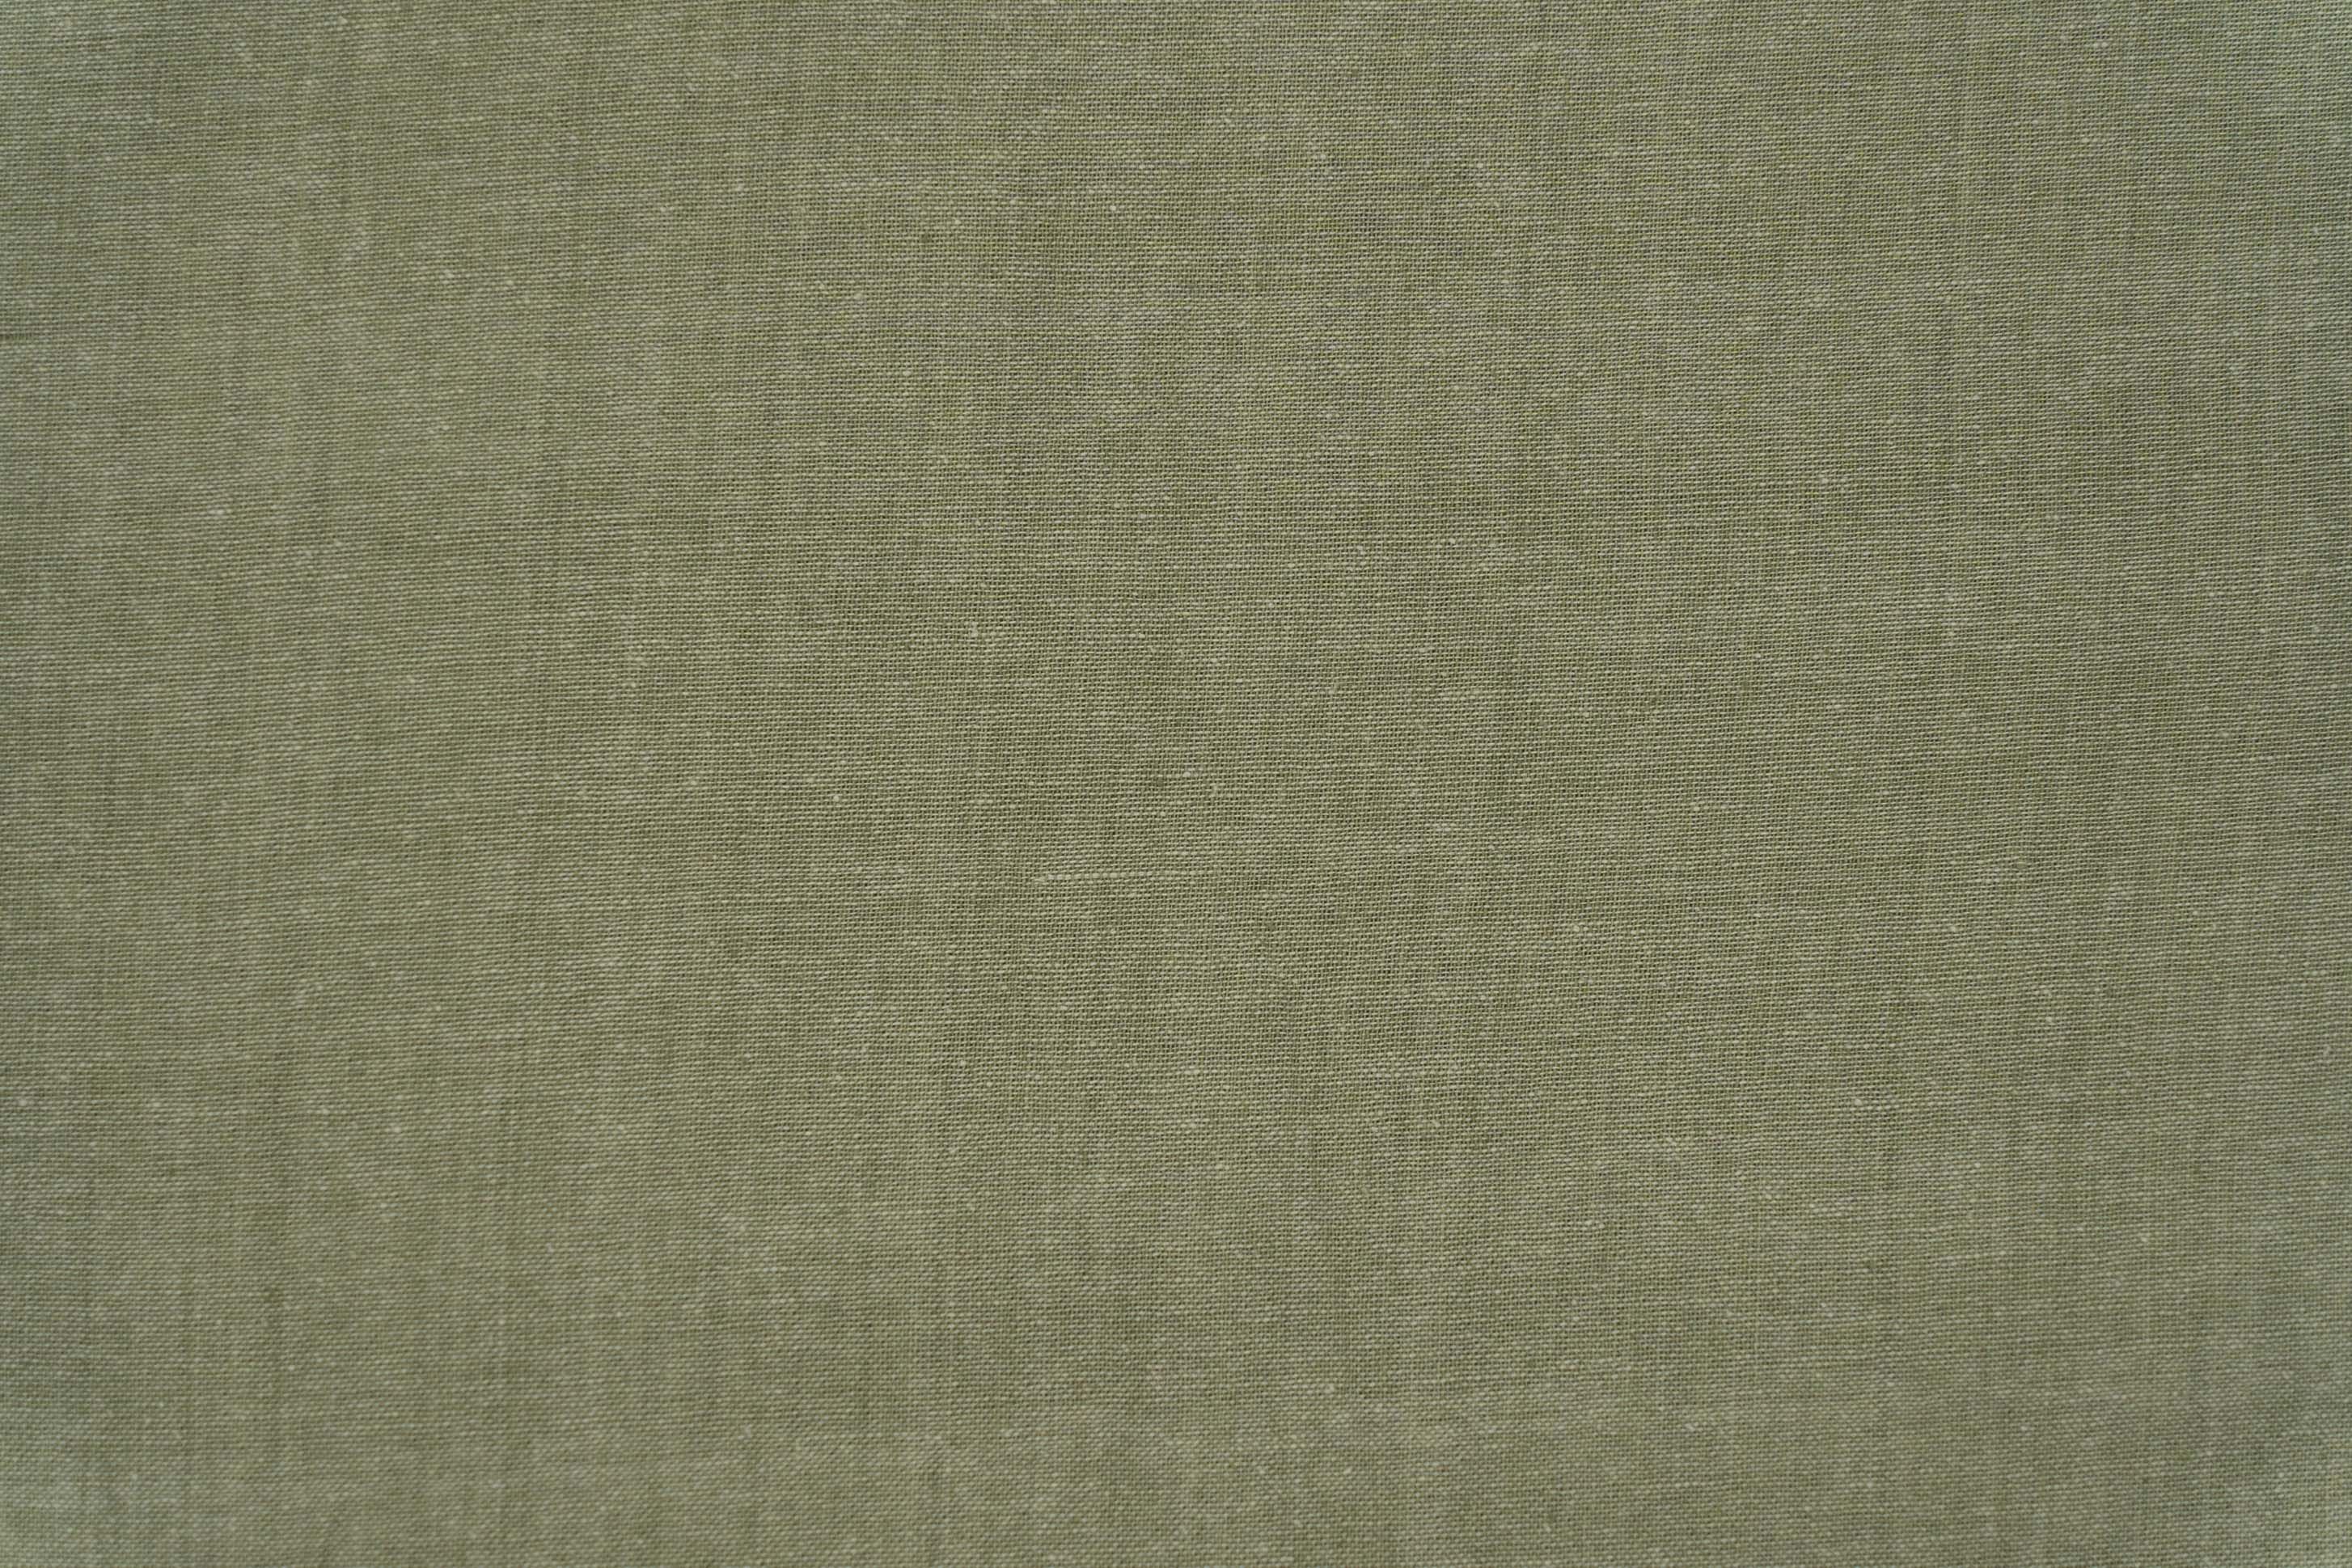 Laureal Green Handloom Khari Cotton Fabric